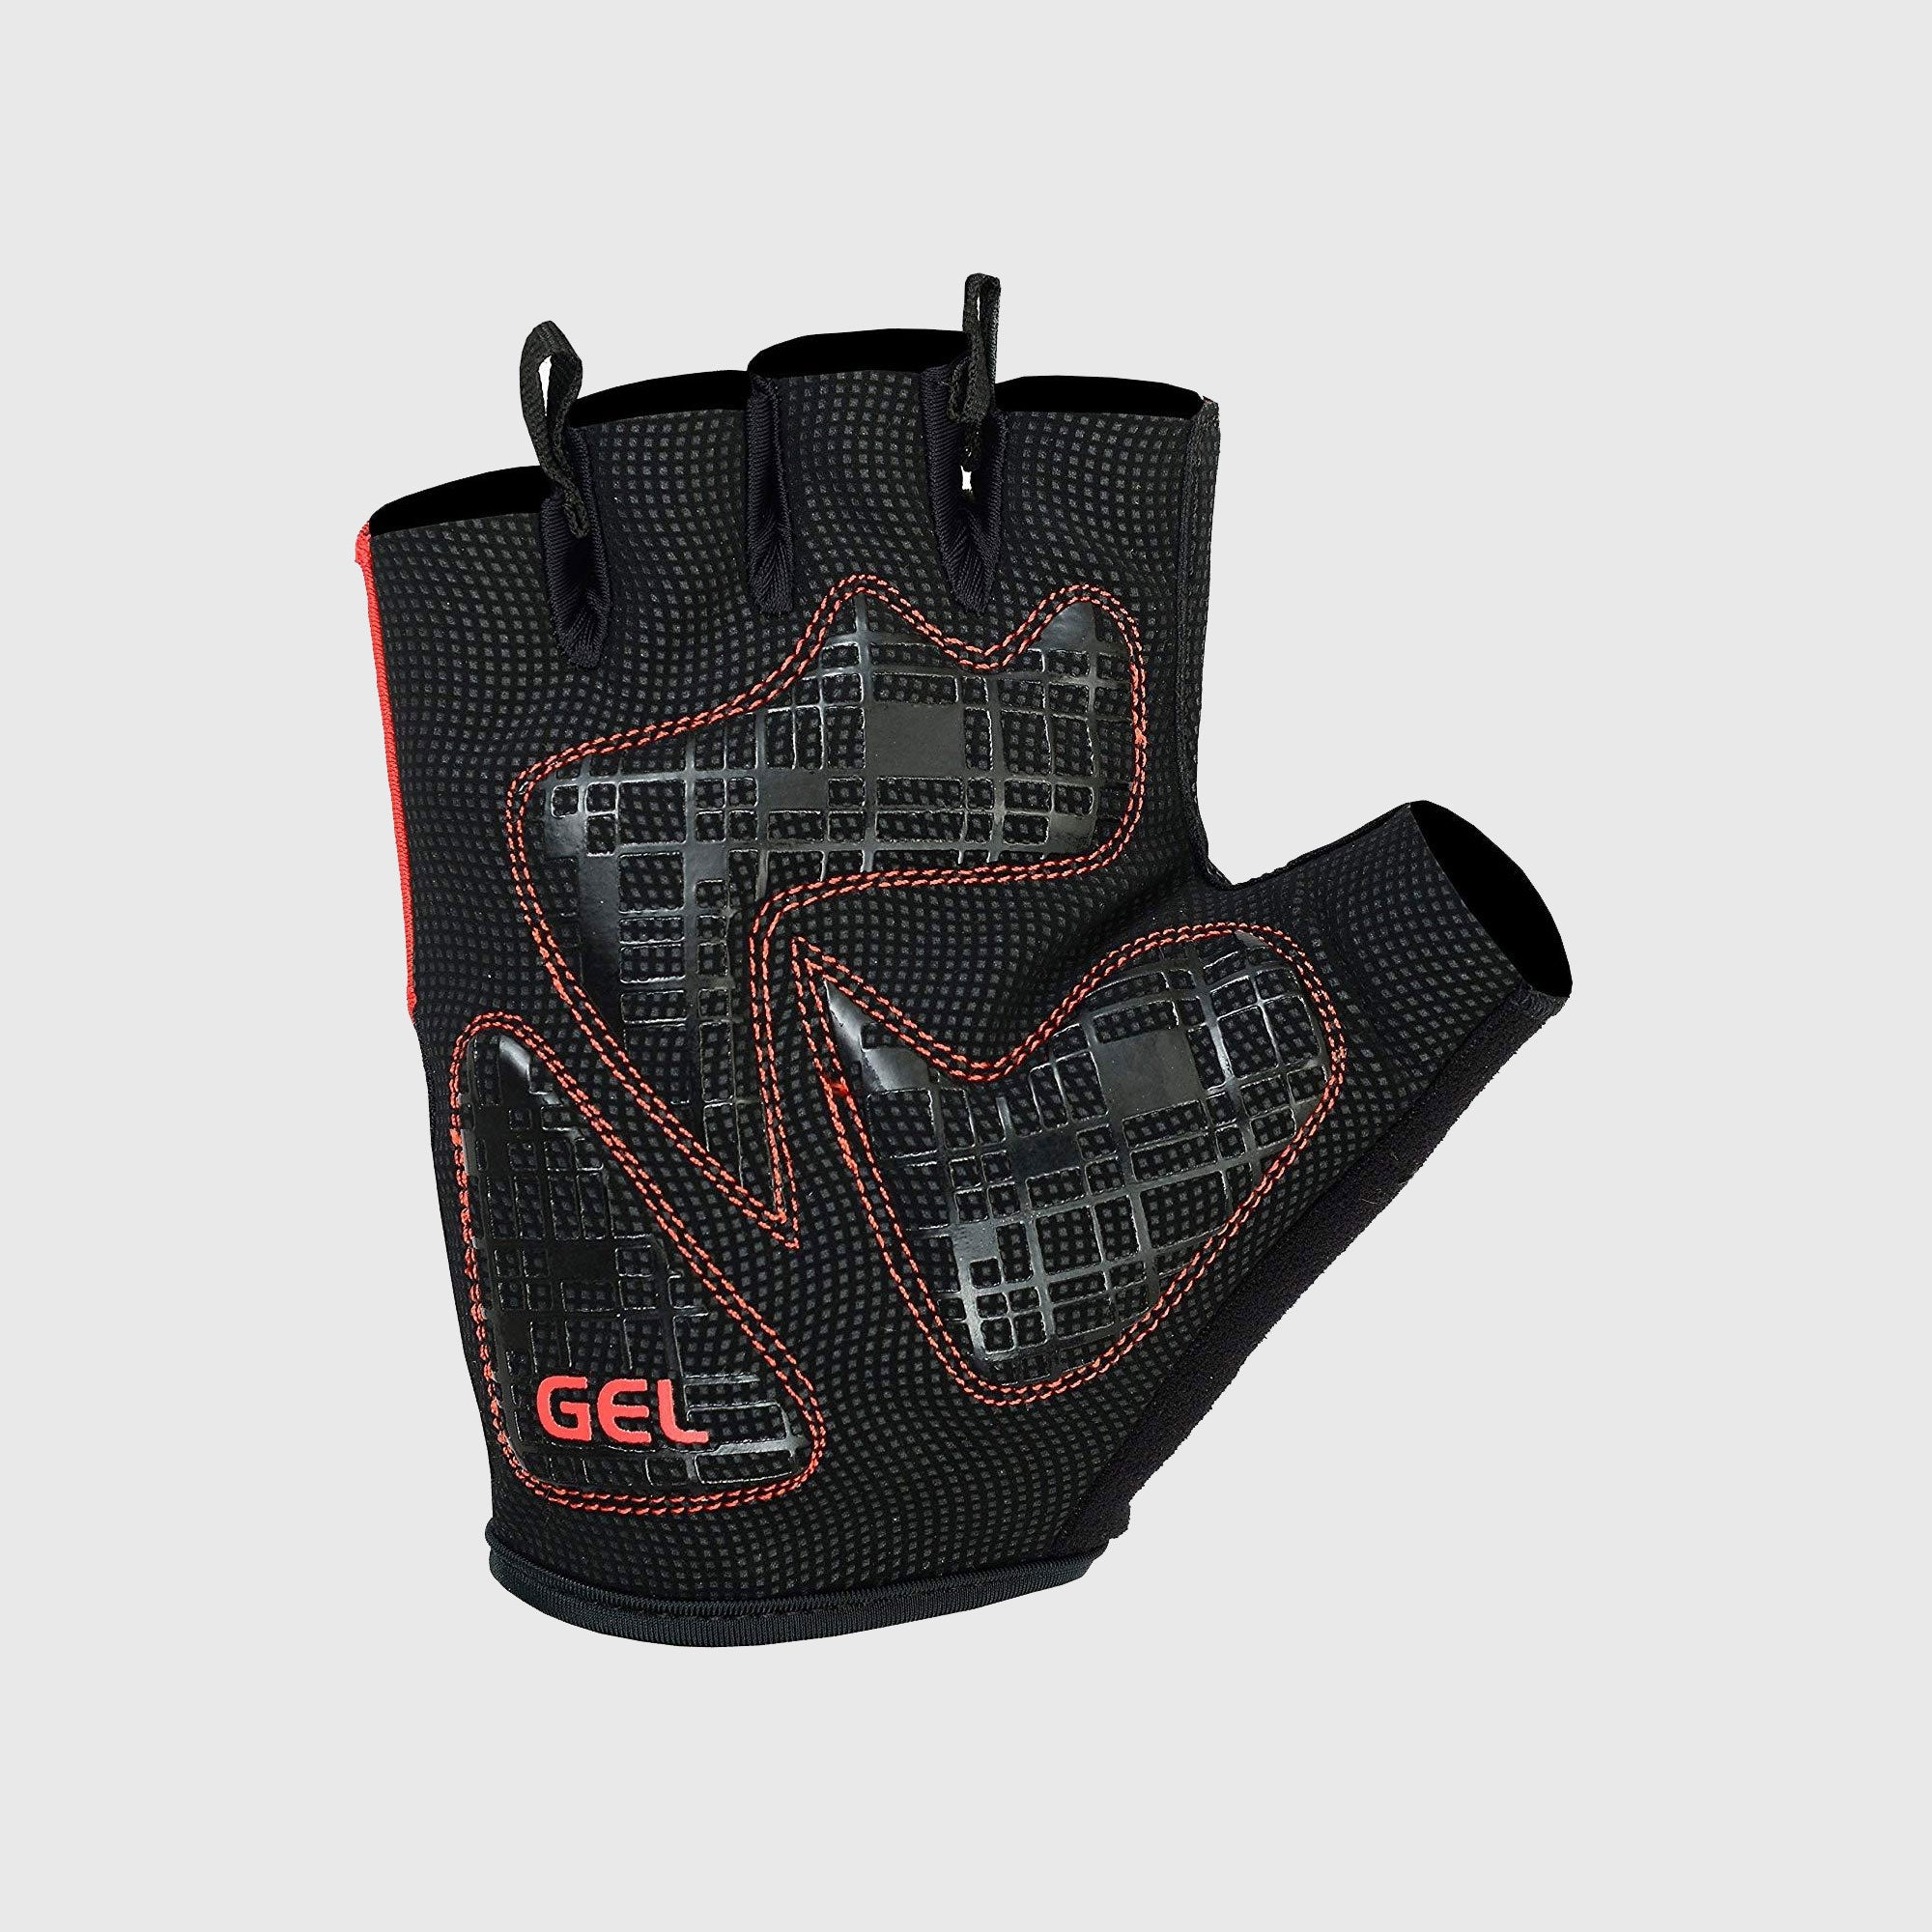 Fdx Black & Red Short Finger Cycling Gloves for Summer MTB Road Bike fingerless, anti slip & Breathable - Apex